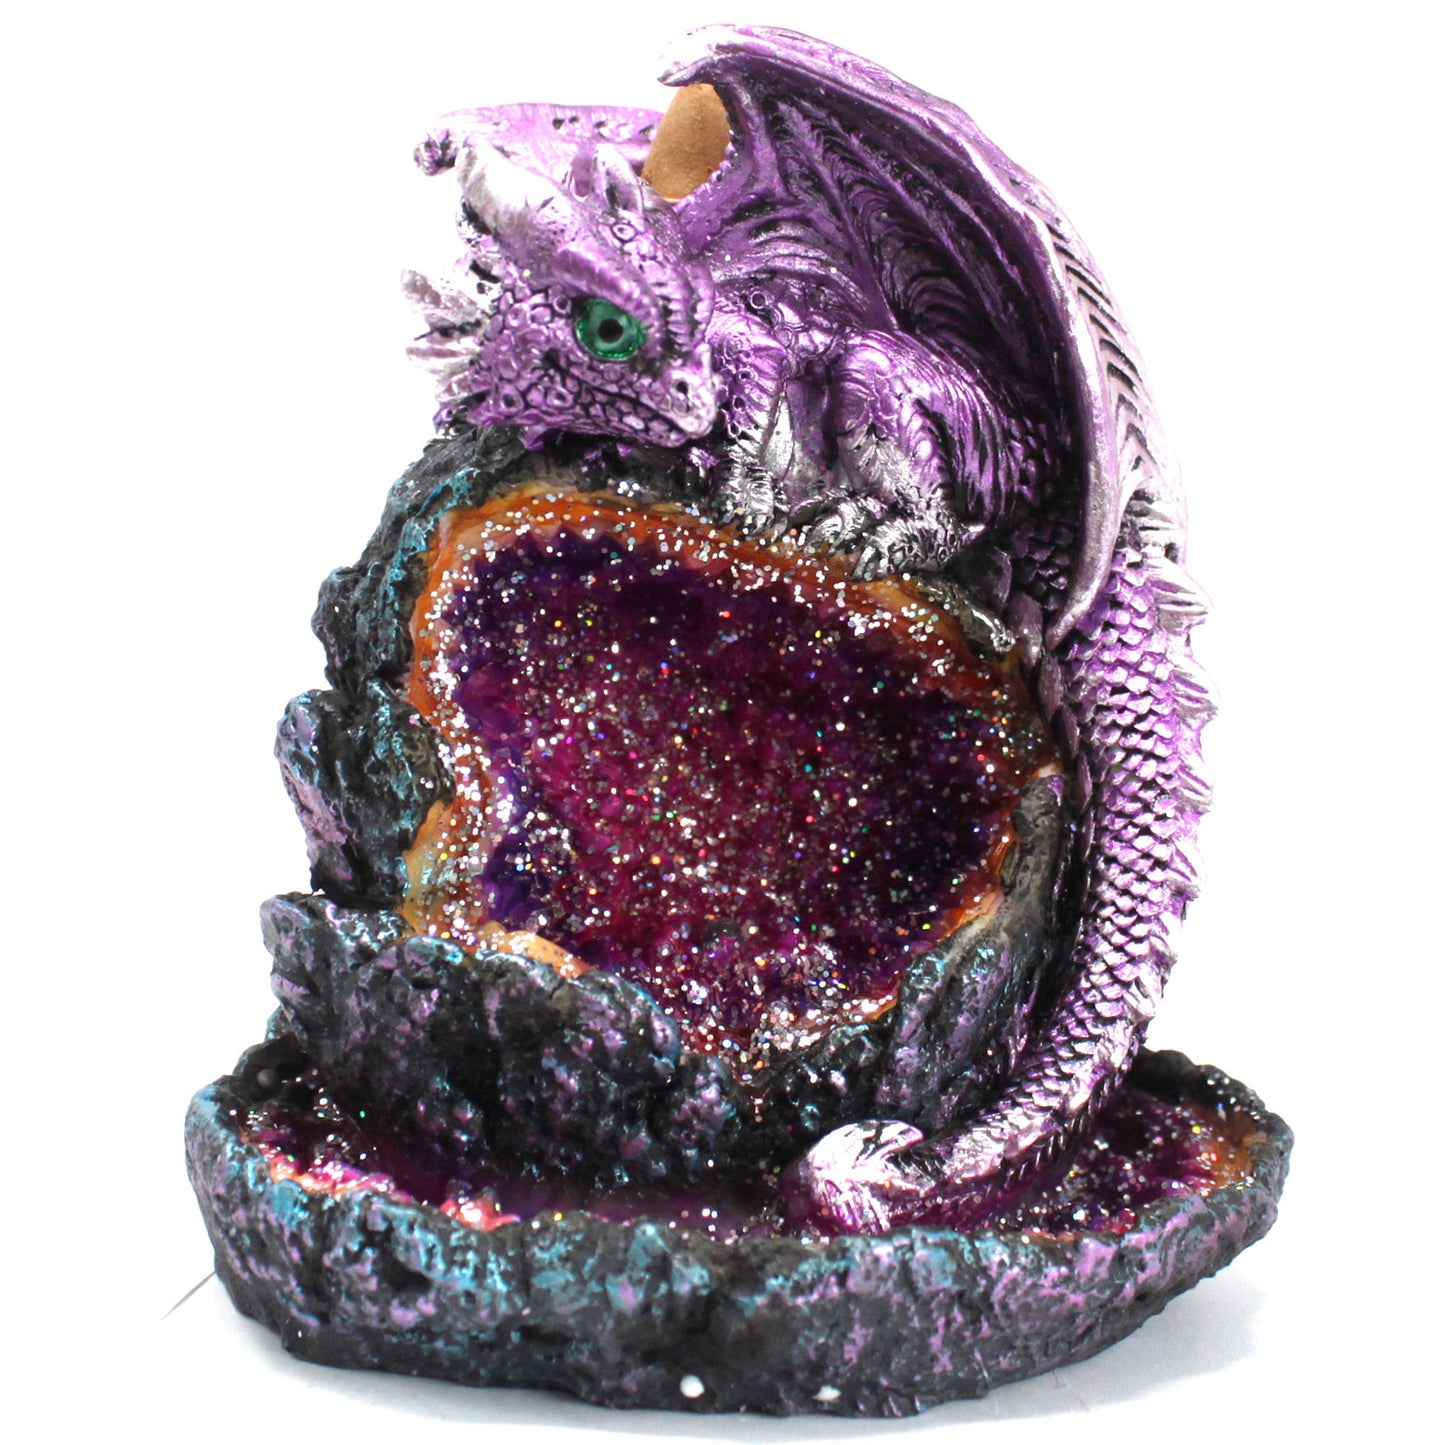 Crystal Cave Purple Dragon LED Backflow Incense
Burner